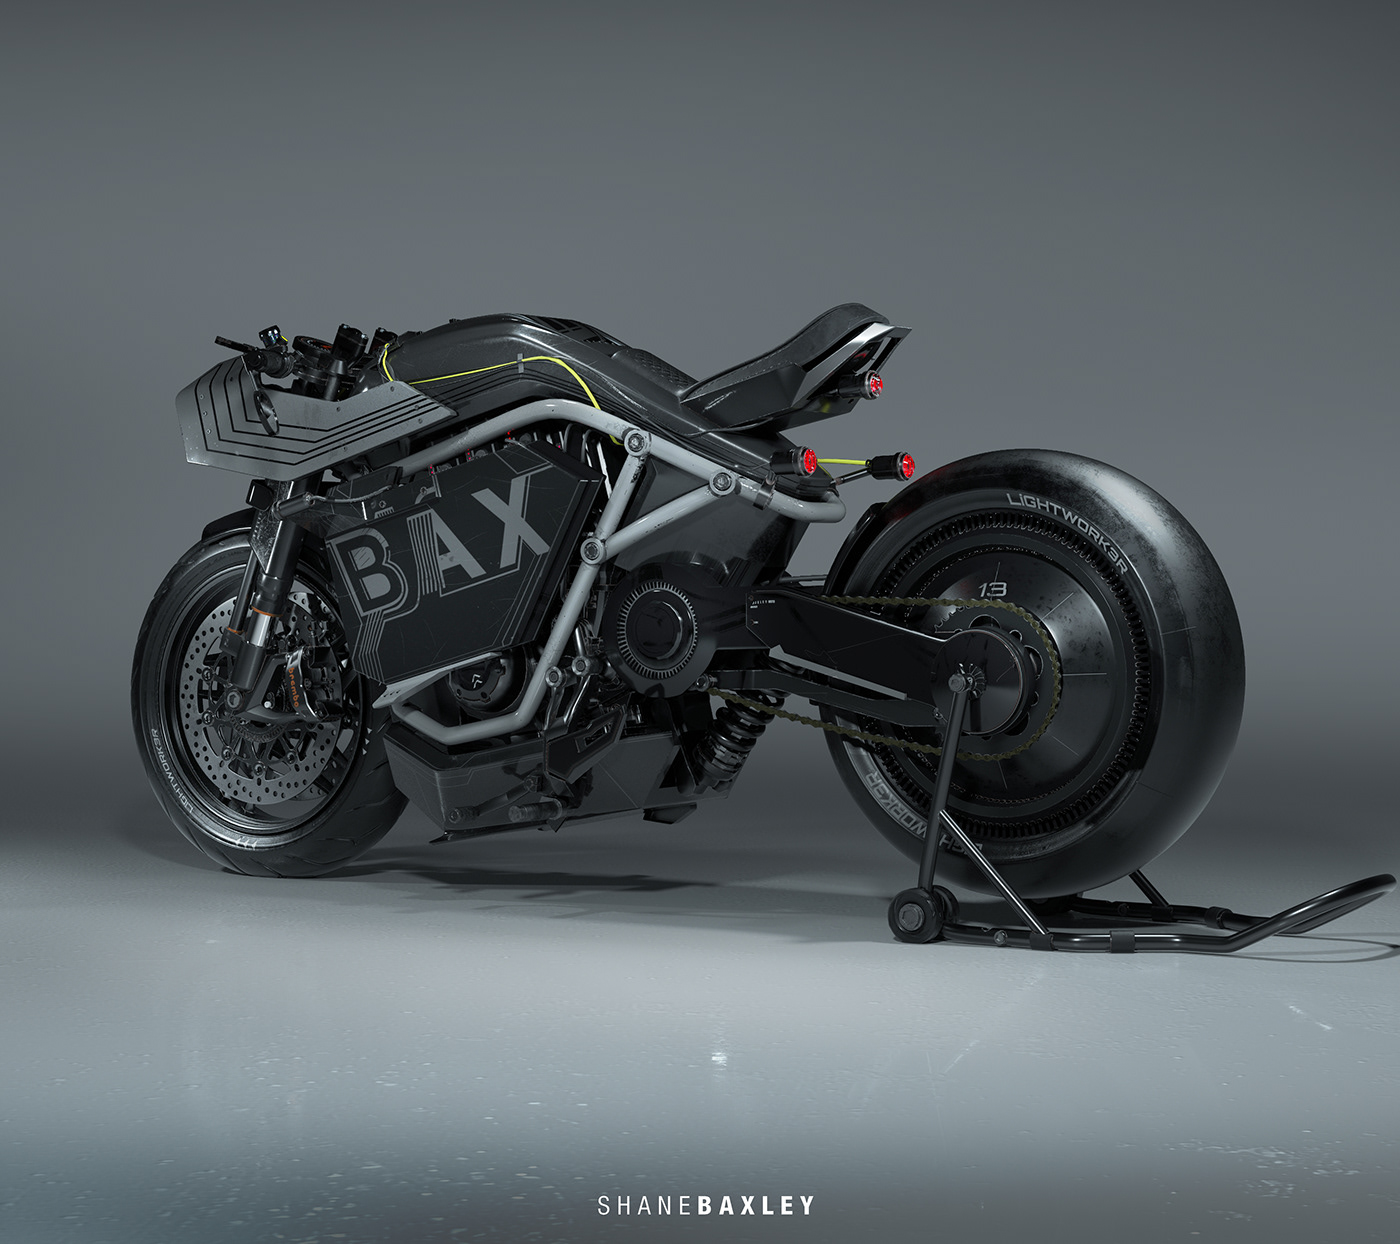 美国3d建模设计师shane baxley设计的摩托车bax moto mk3,太帅了!